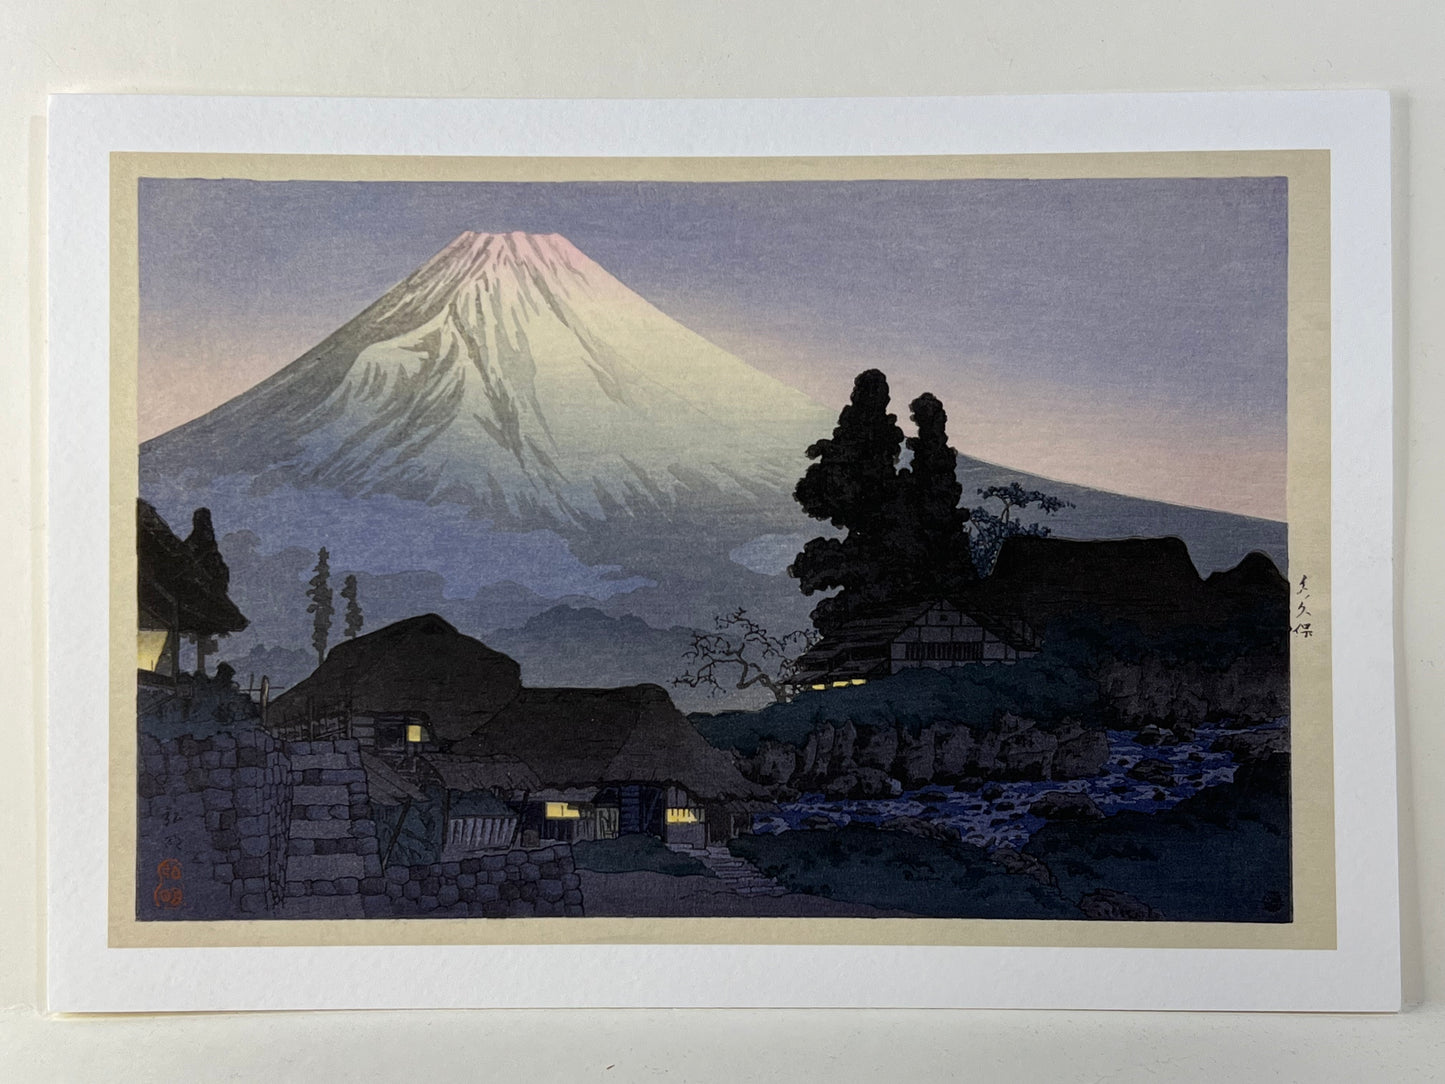 Shotei Takahashi Giclee Woodblock Print Mt Fuji from Mitsukubo 7.5" x 11"